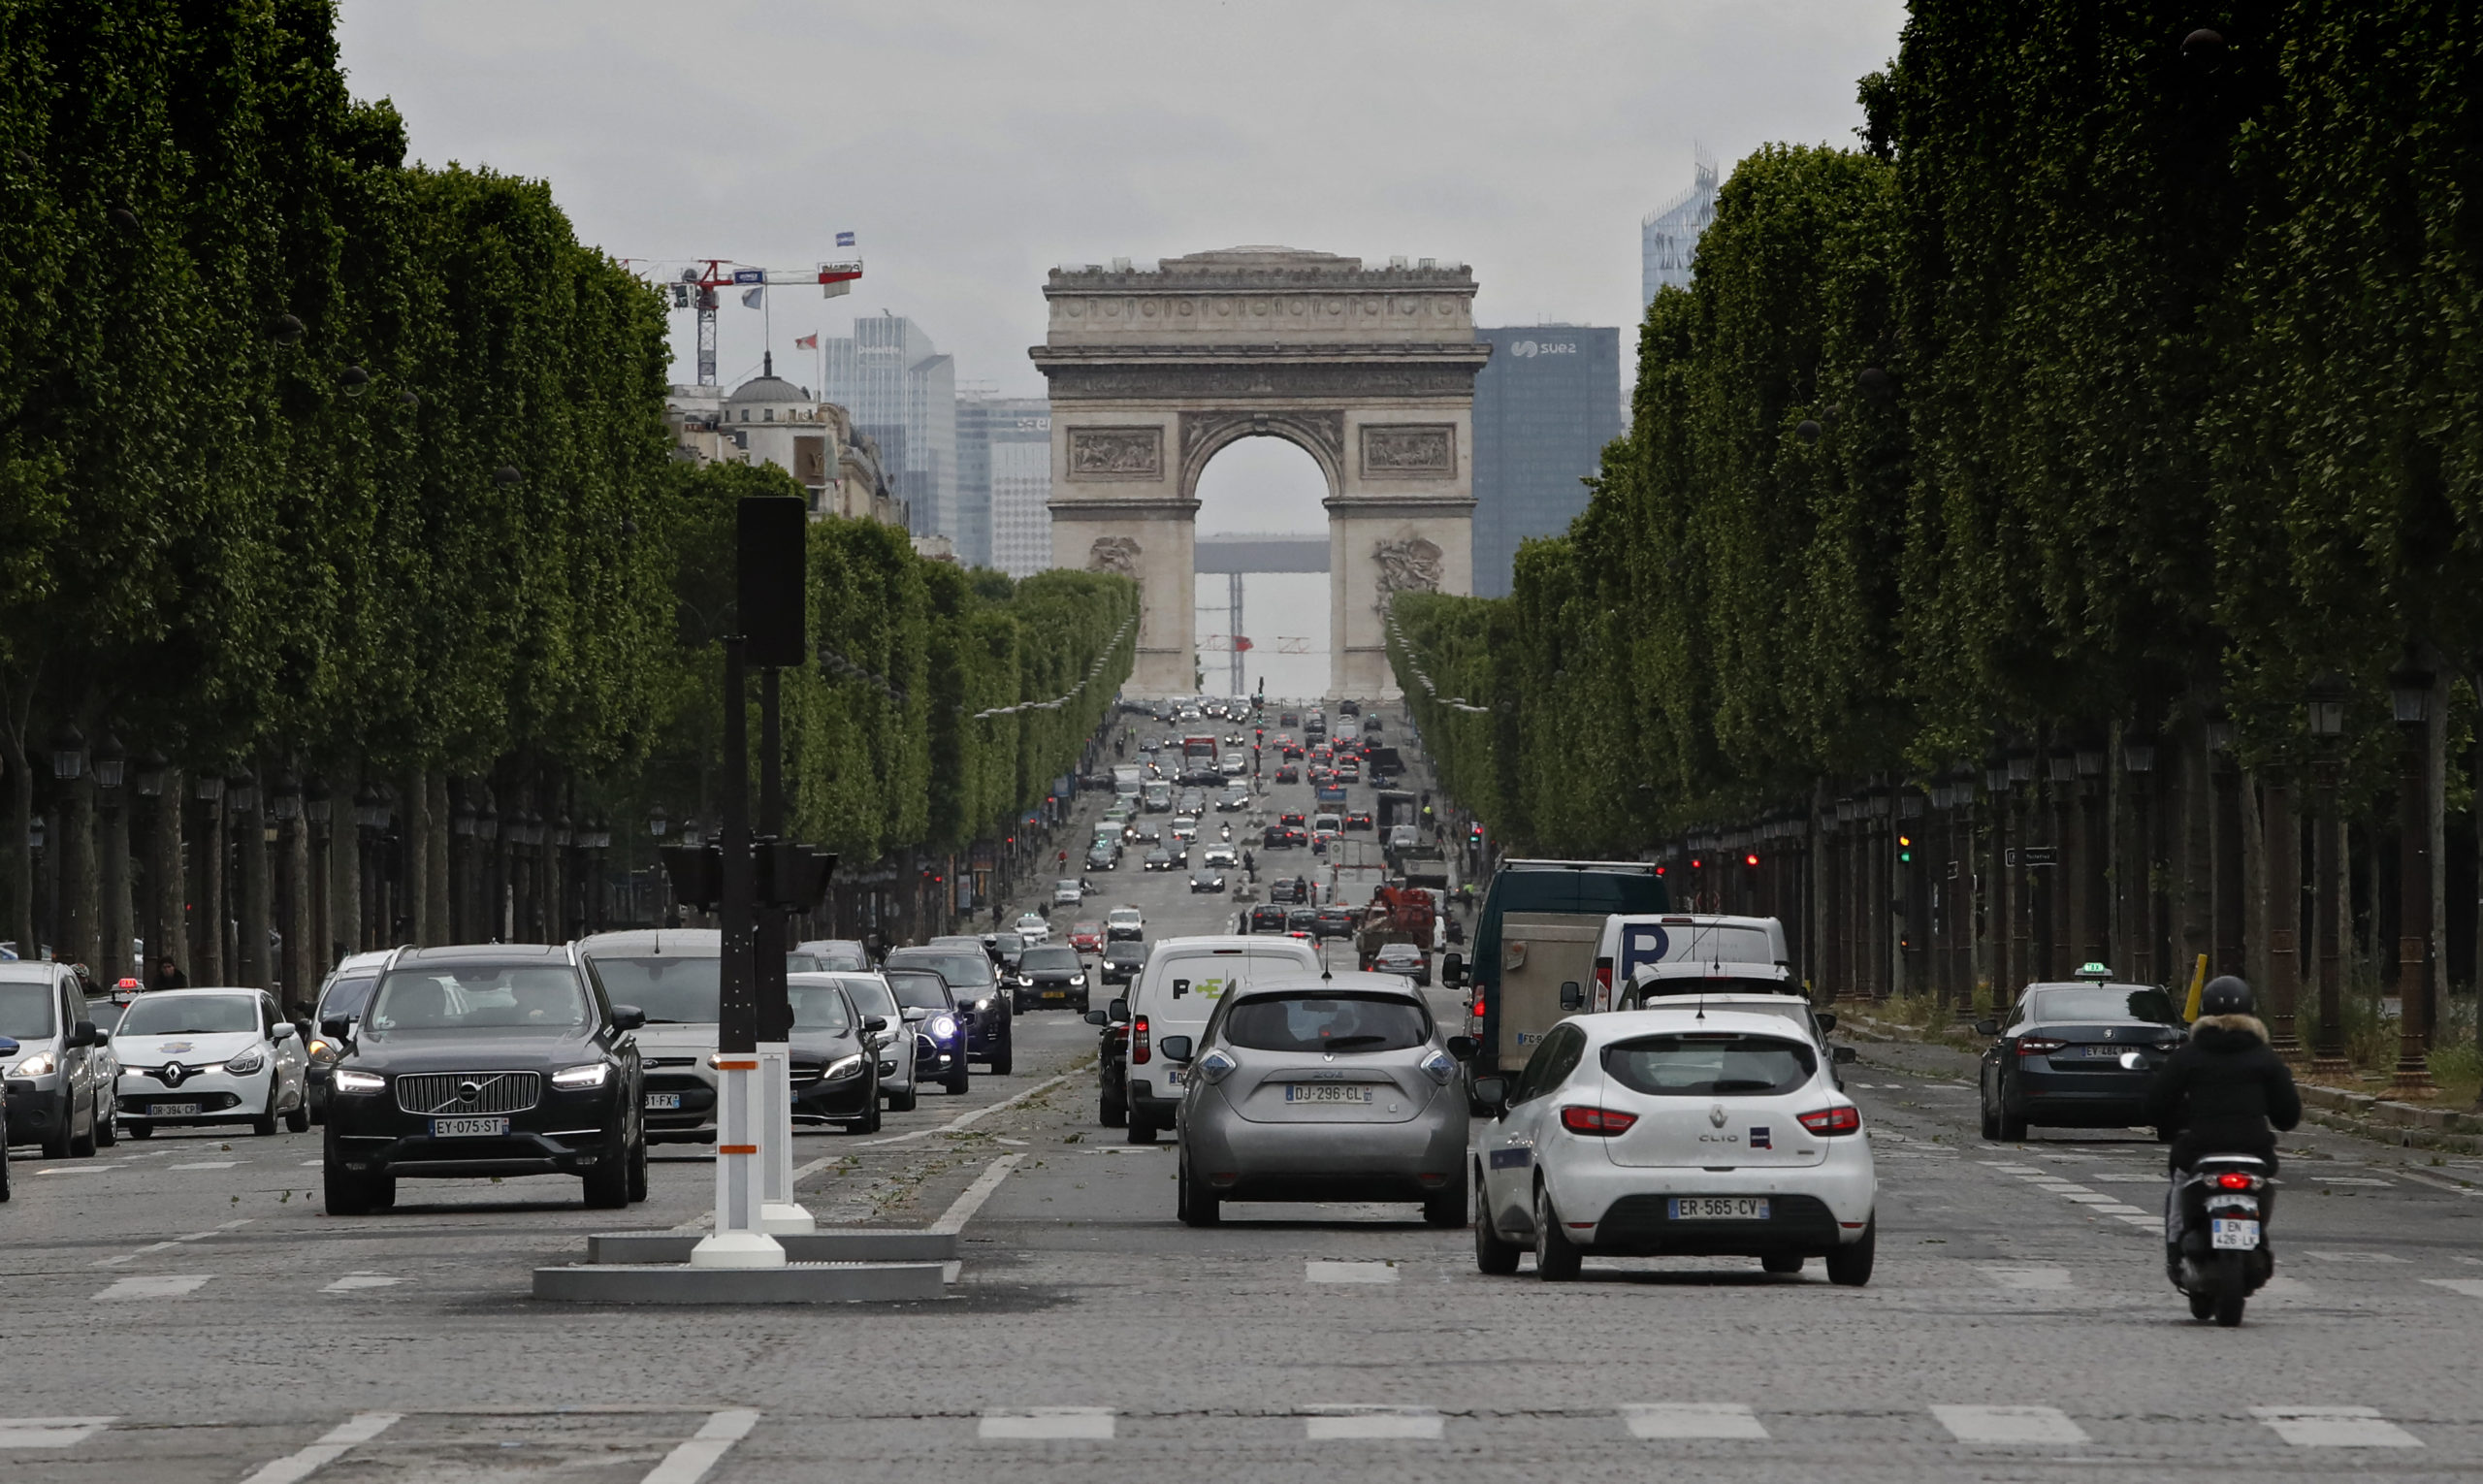 Paris: 70 000 fewer parking spots by 2026